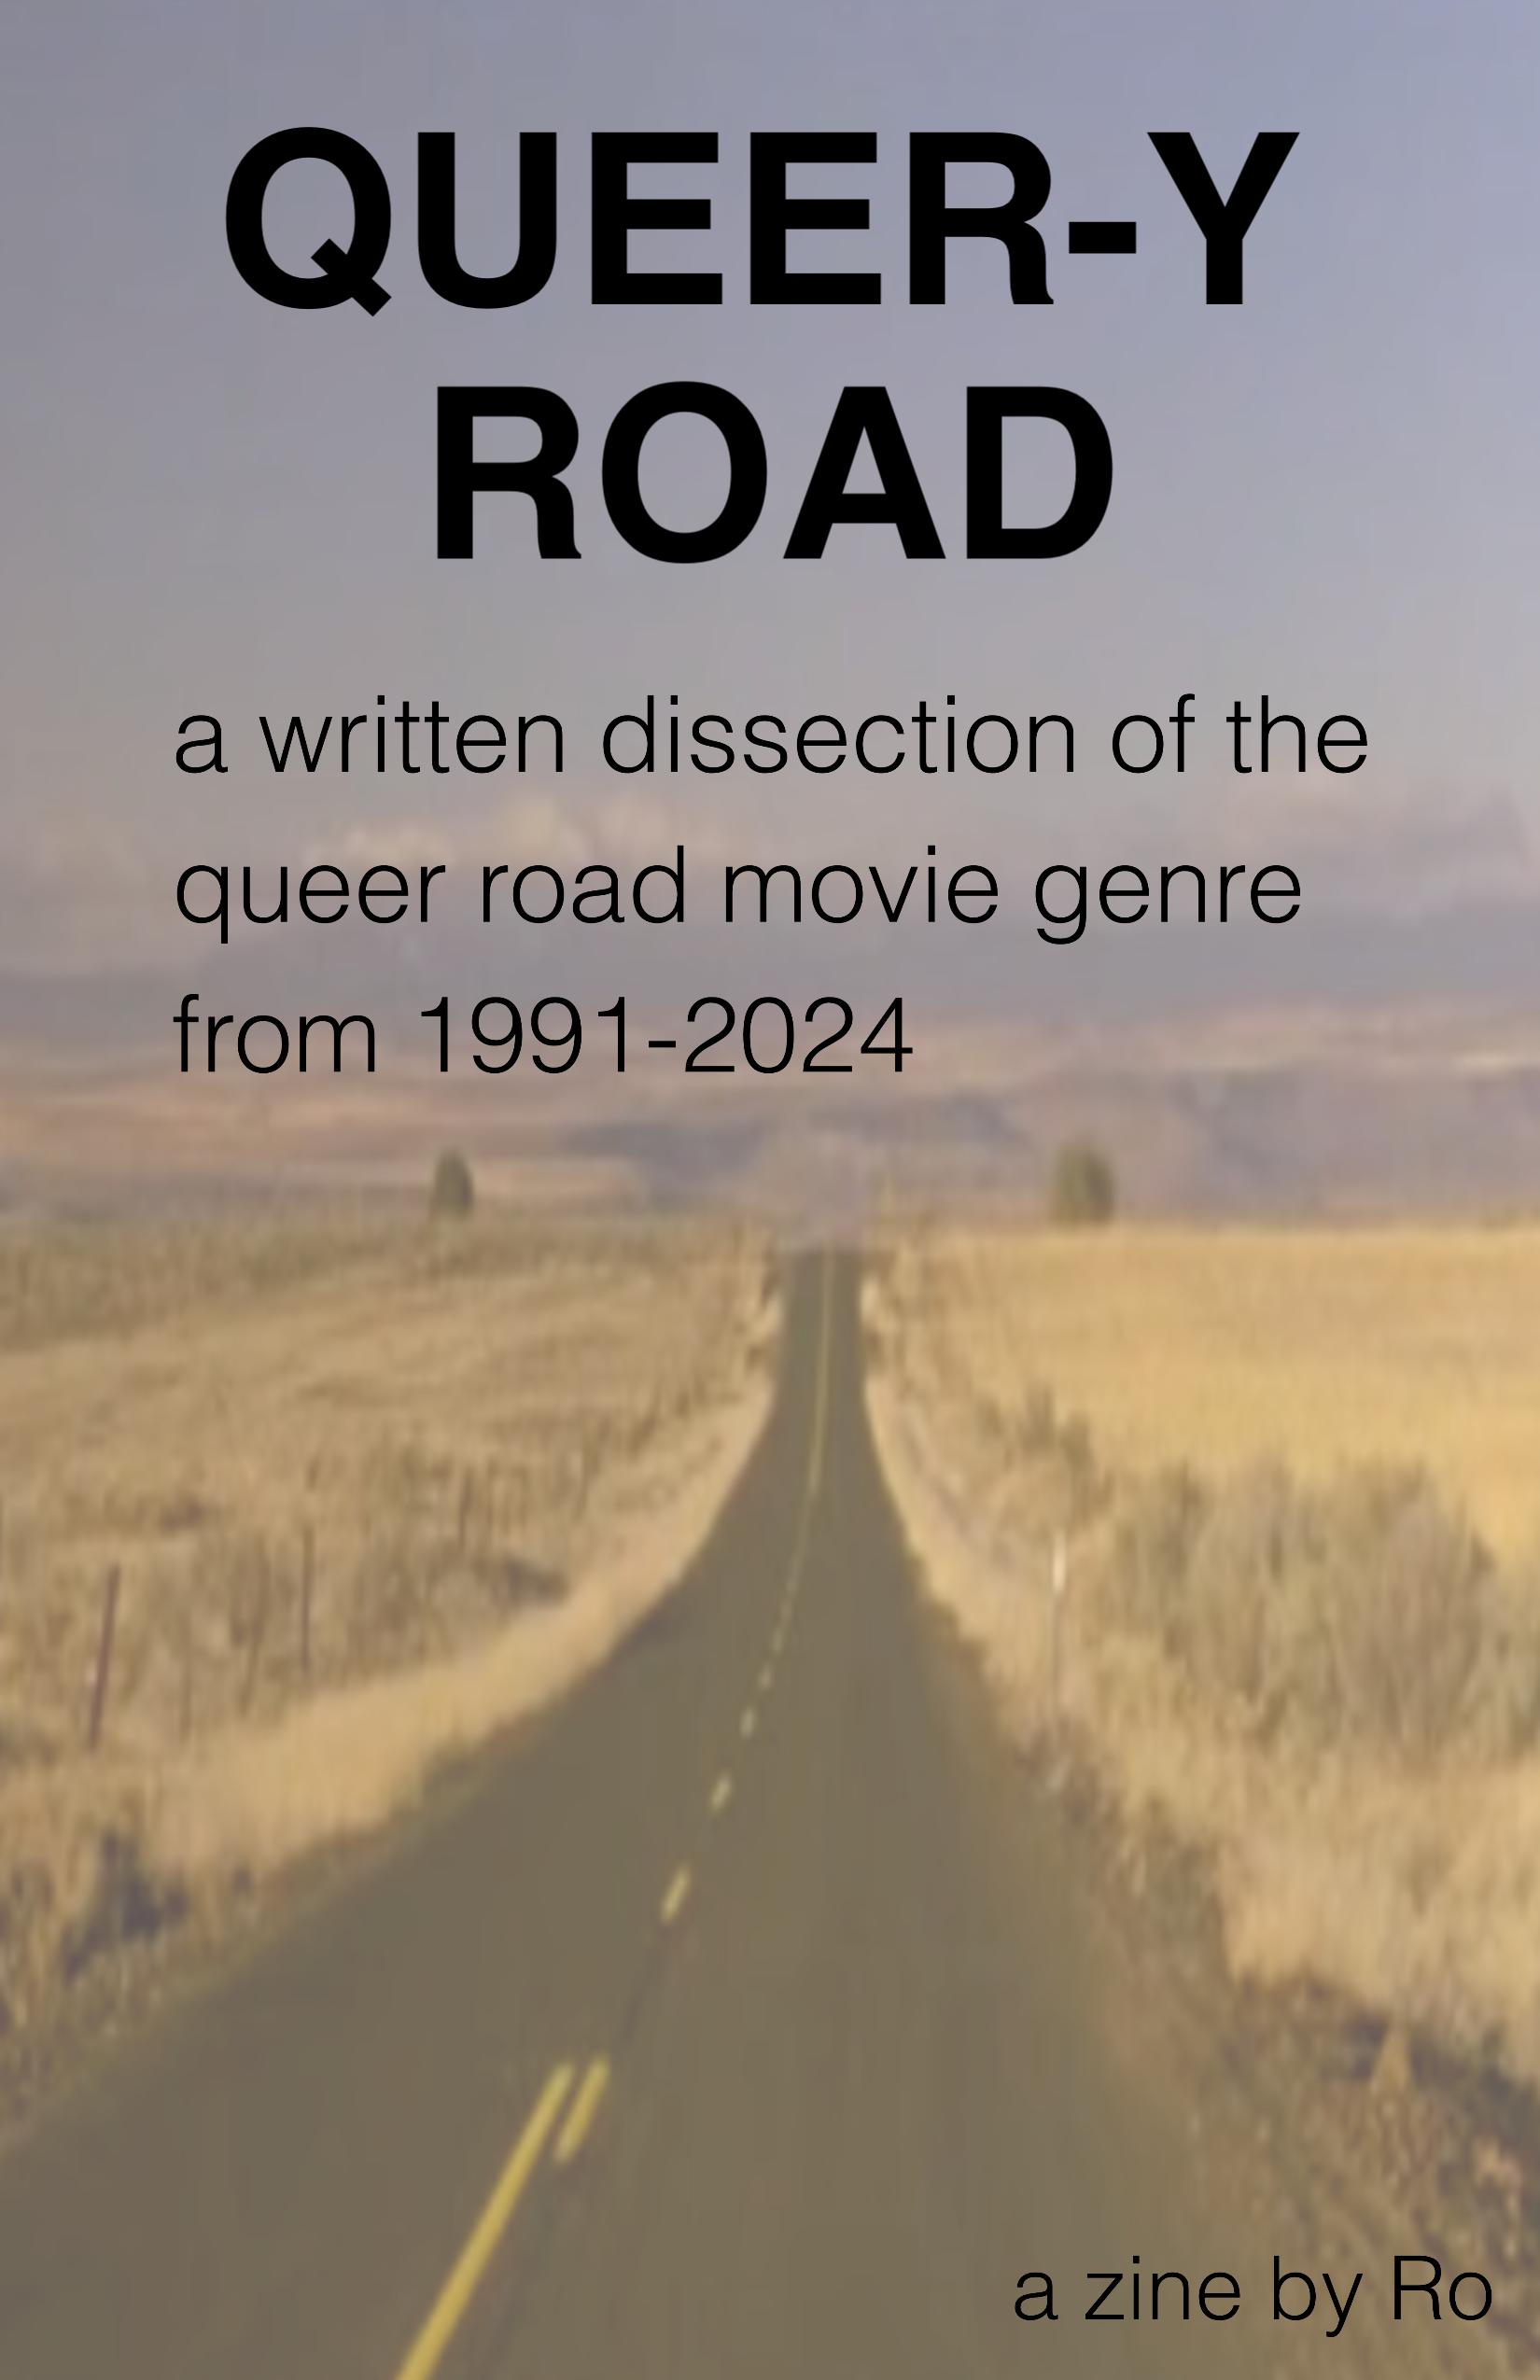 Cover of my queer road zine